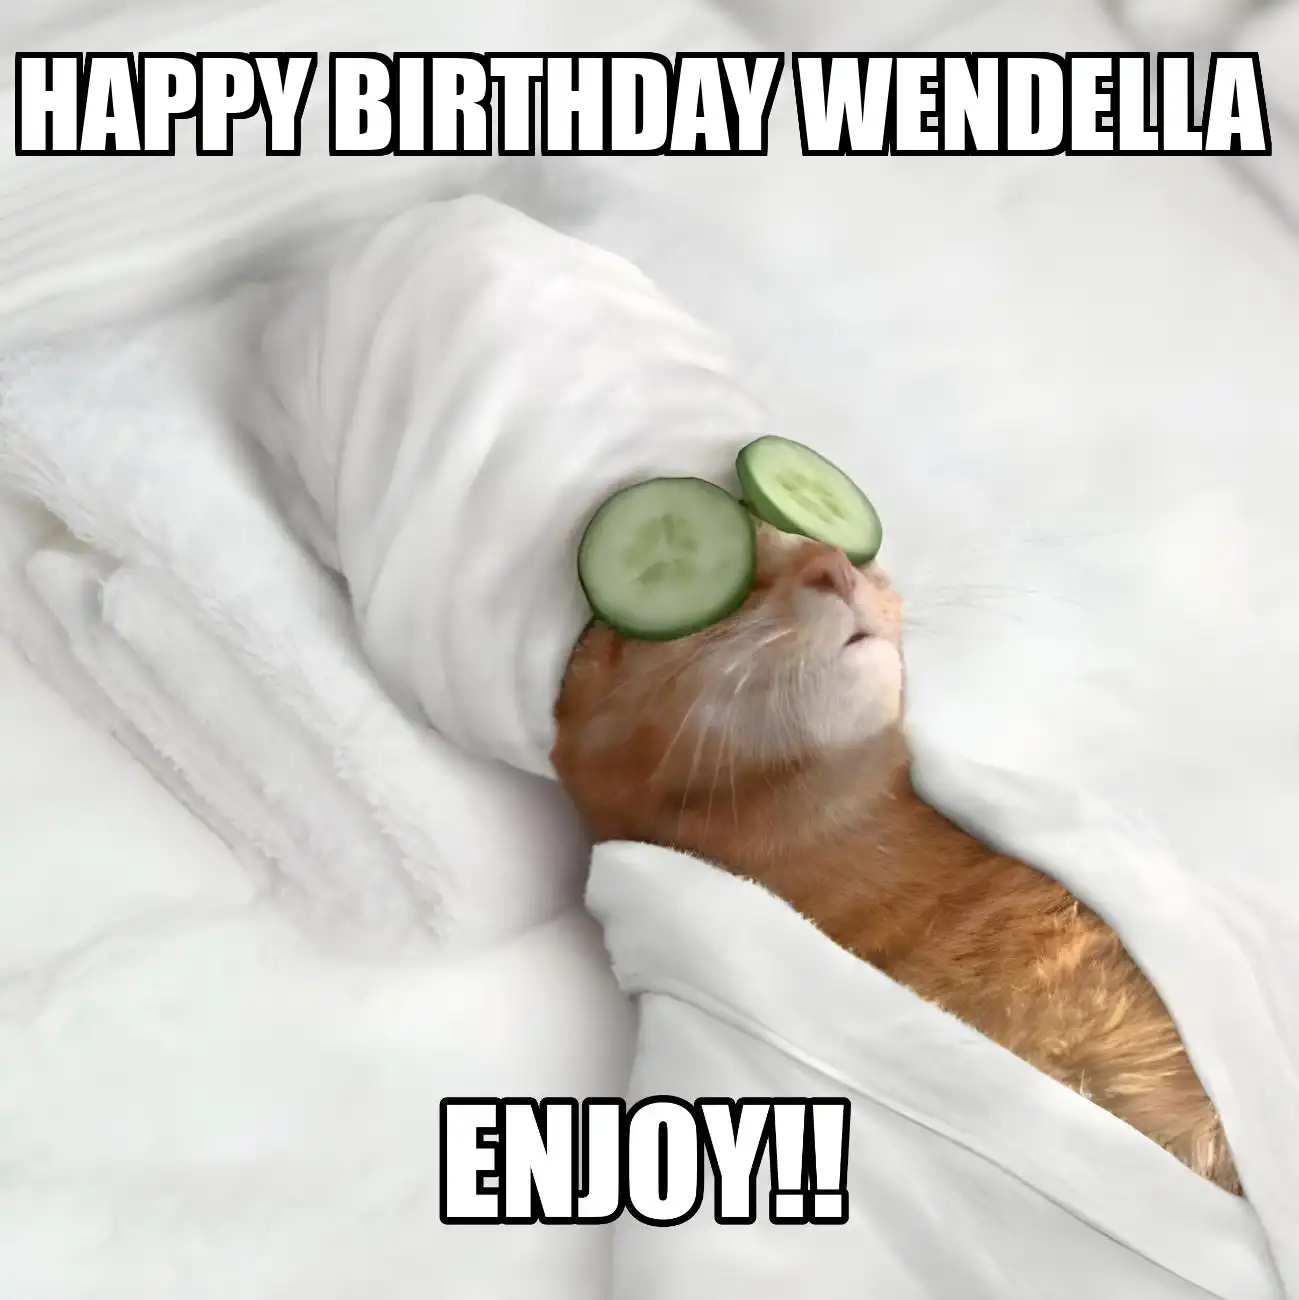 Happy Birthday Wendella Enjoy Cat Meme